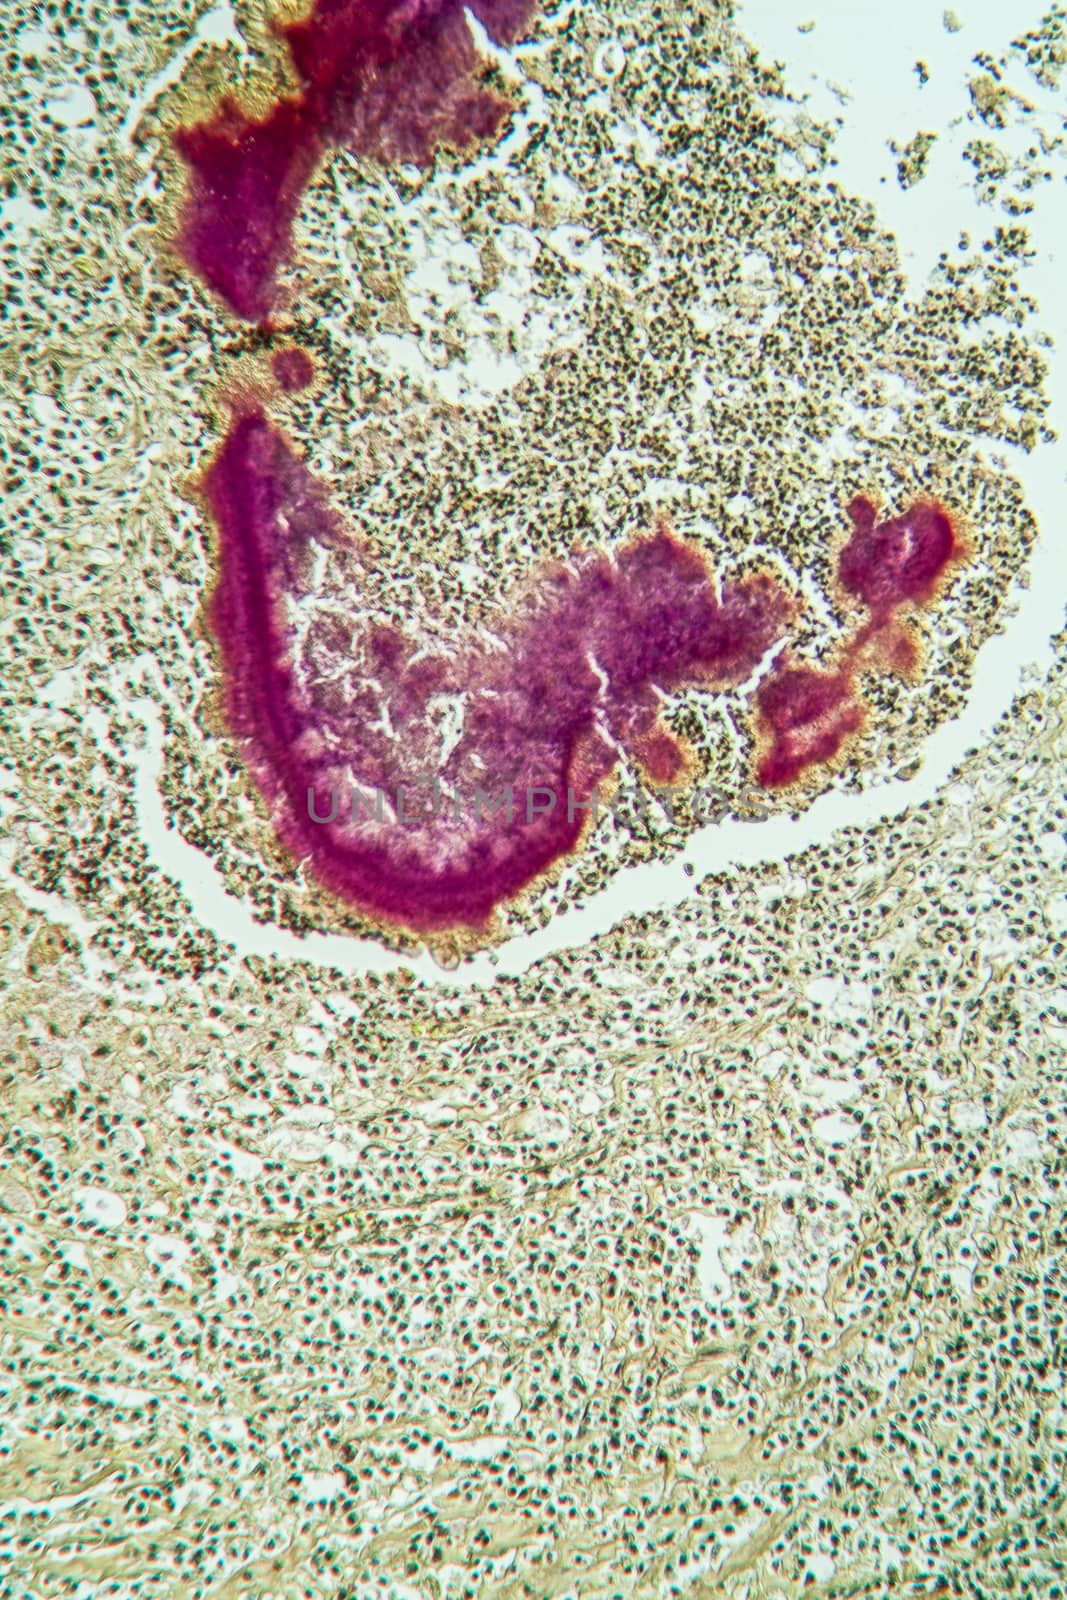 Actinomyces disease under the microscope 100x